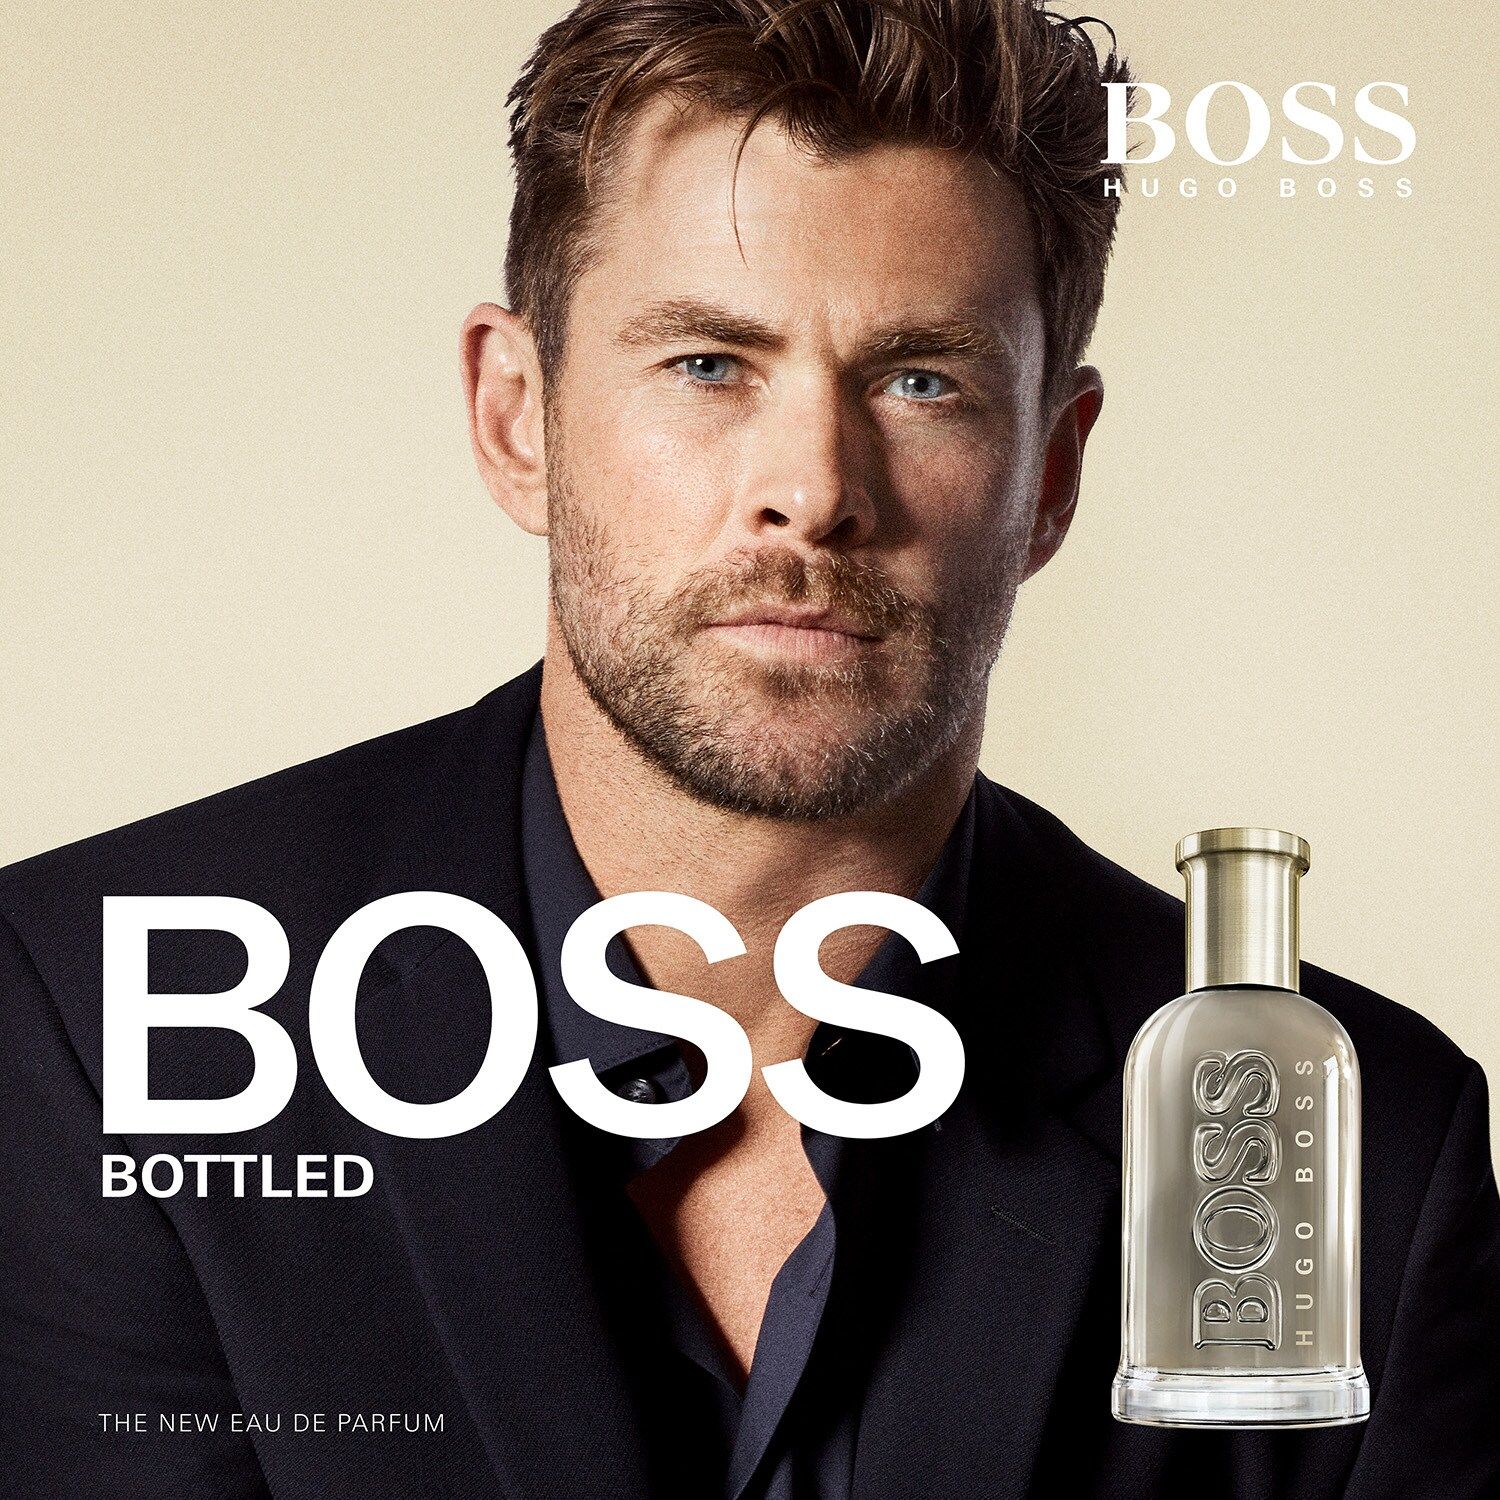 Boss Bottled Eau de Parfum Hugo Boss Colonia una nuevo fragancia para